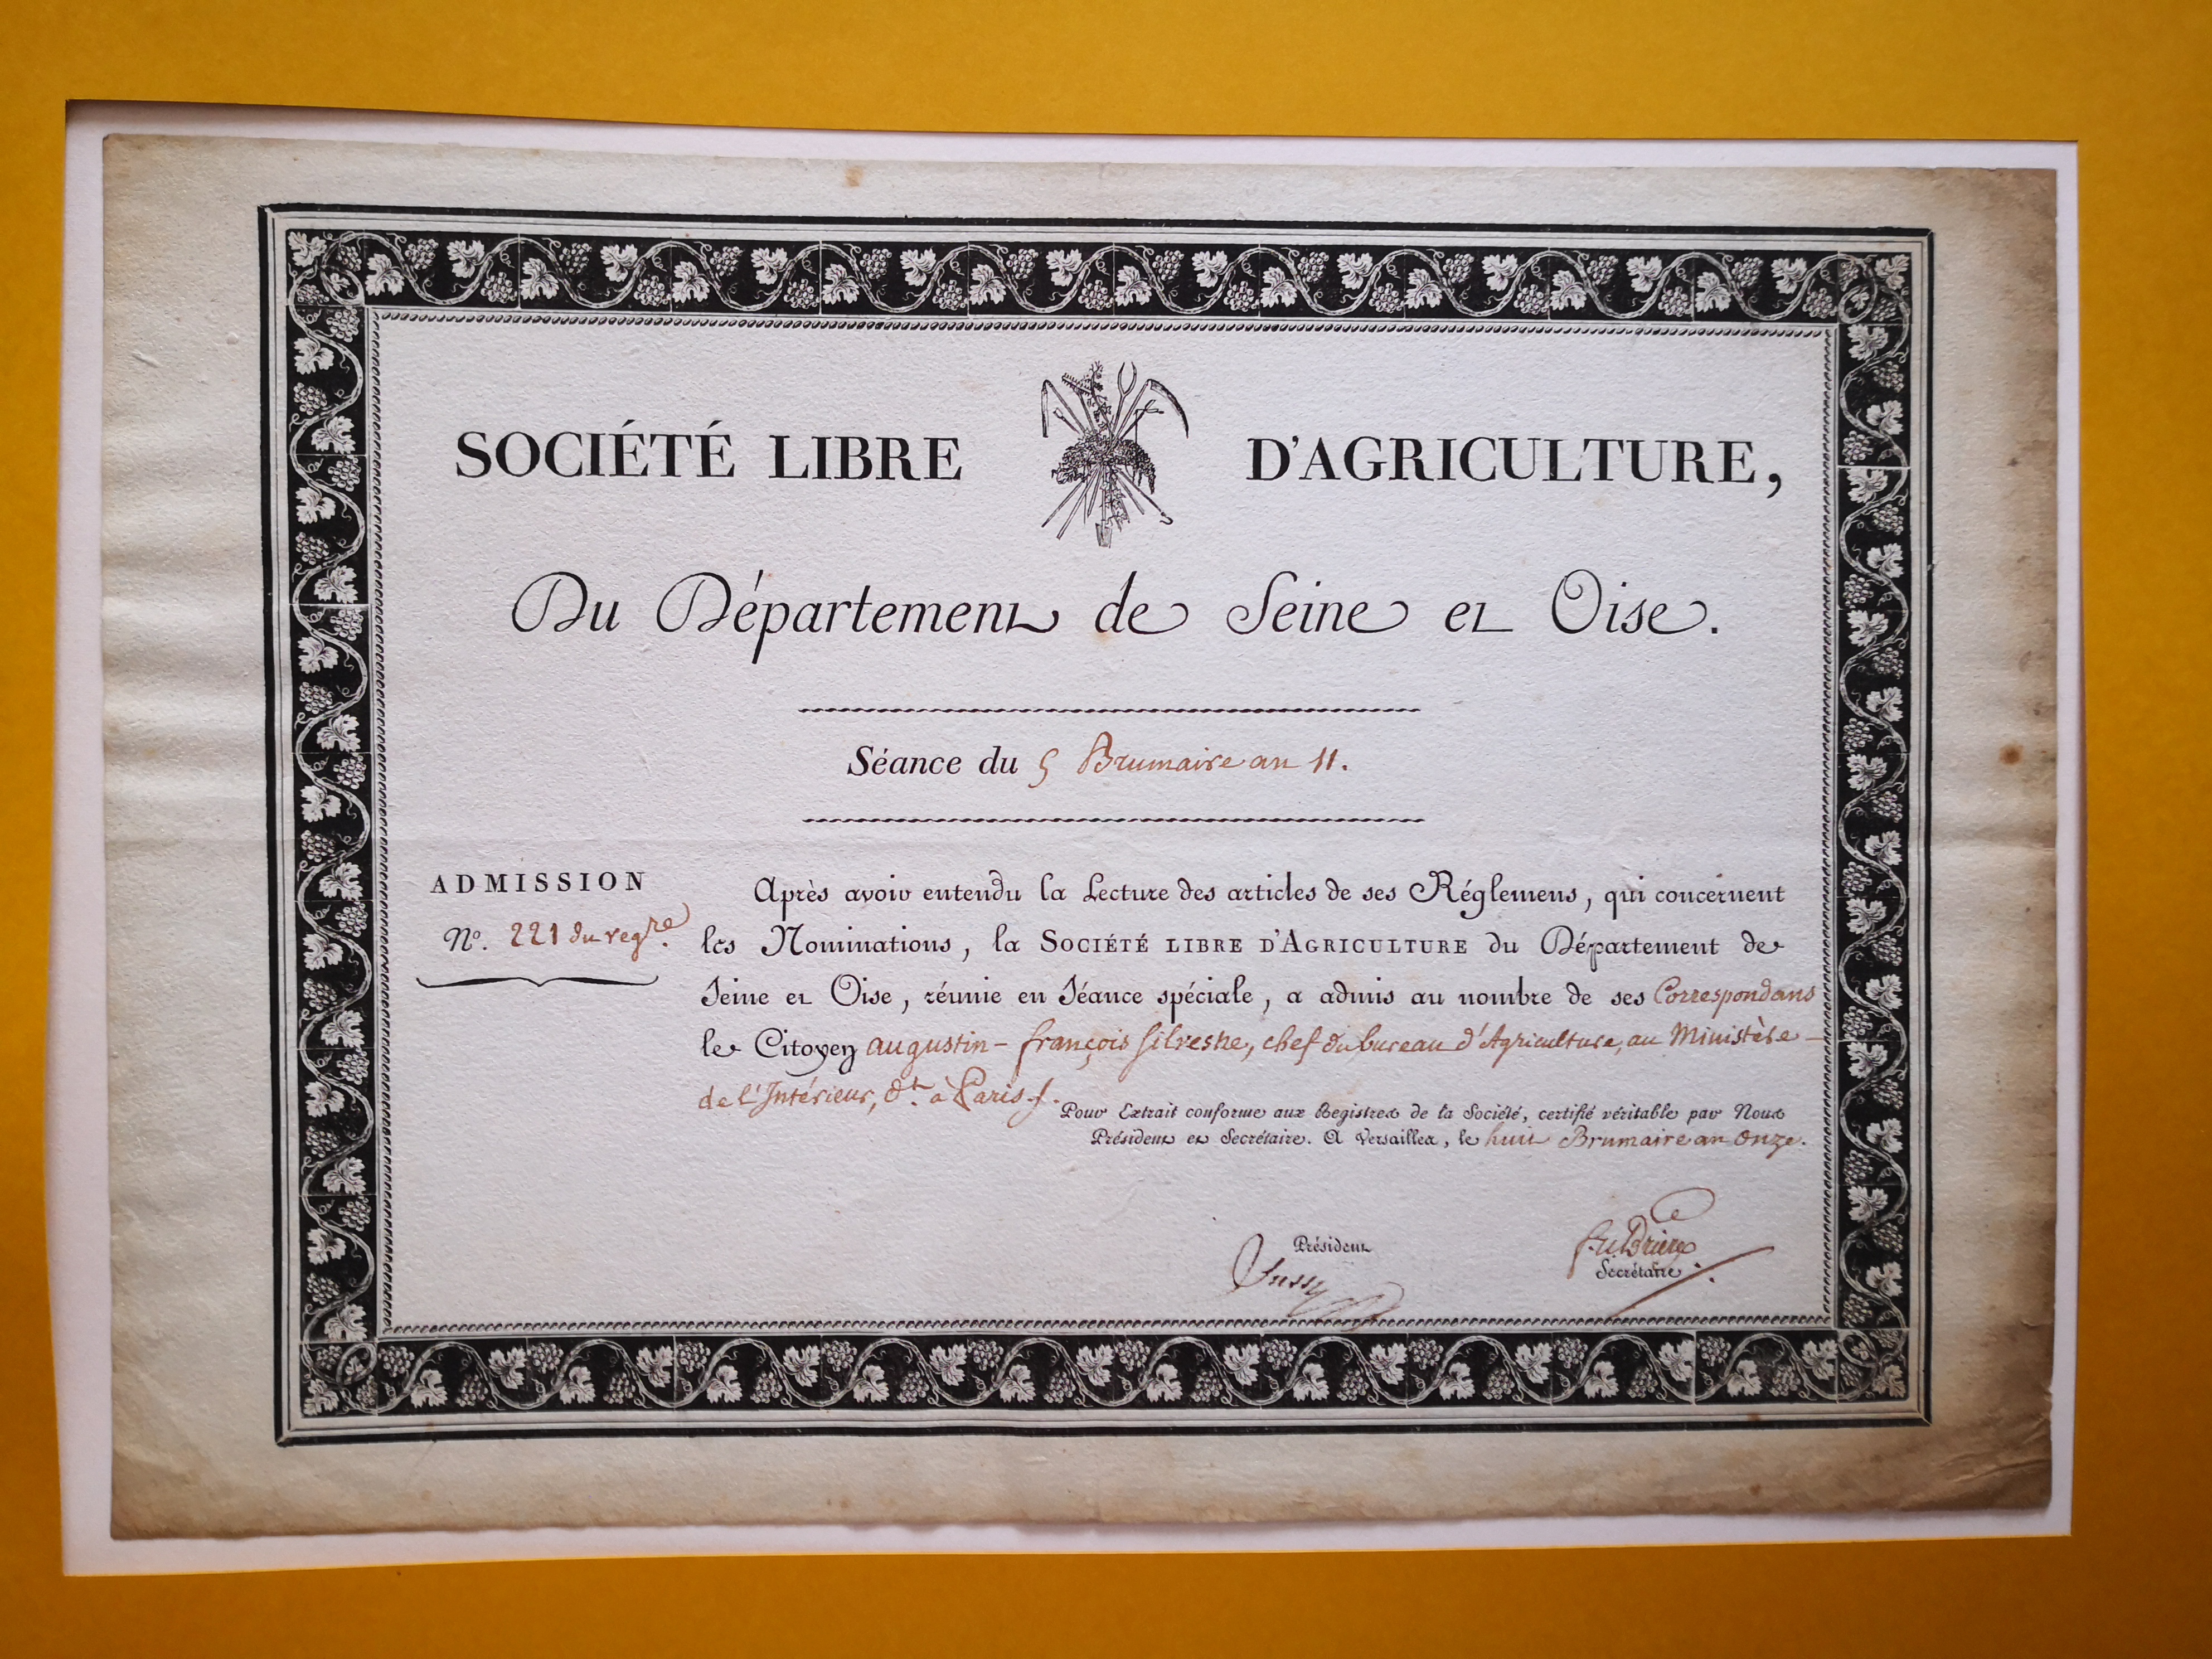  Diplôme de correspondant de la Société Libre d'Agriculture du département de la Seine et Oise - Document 1